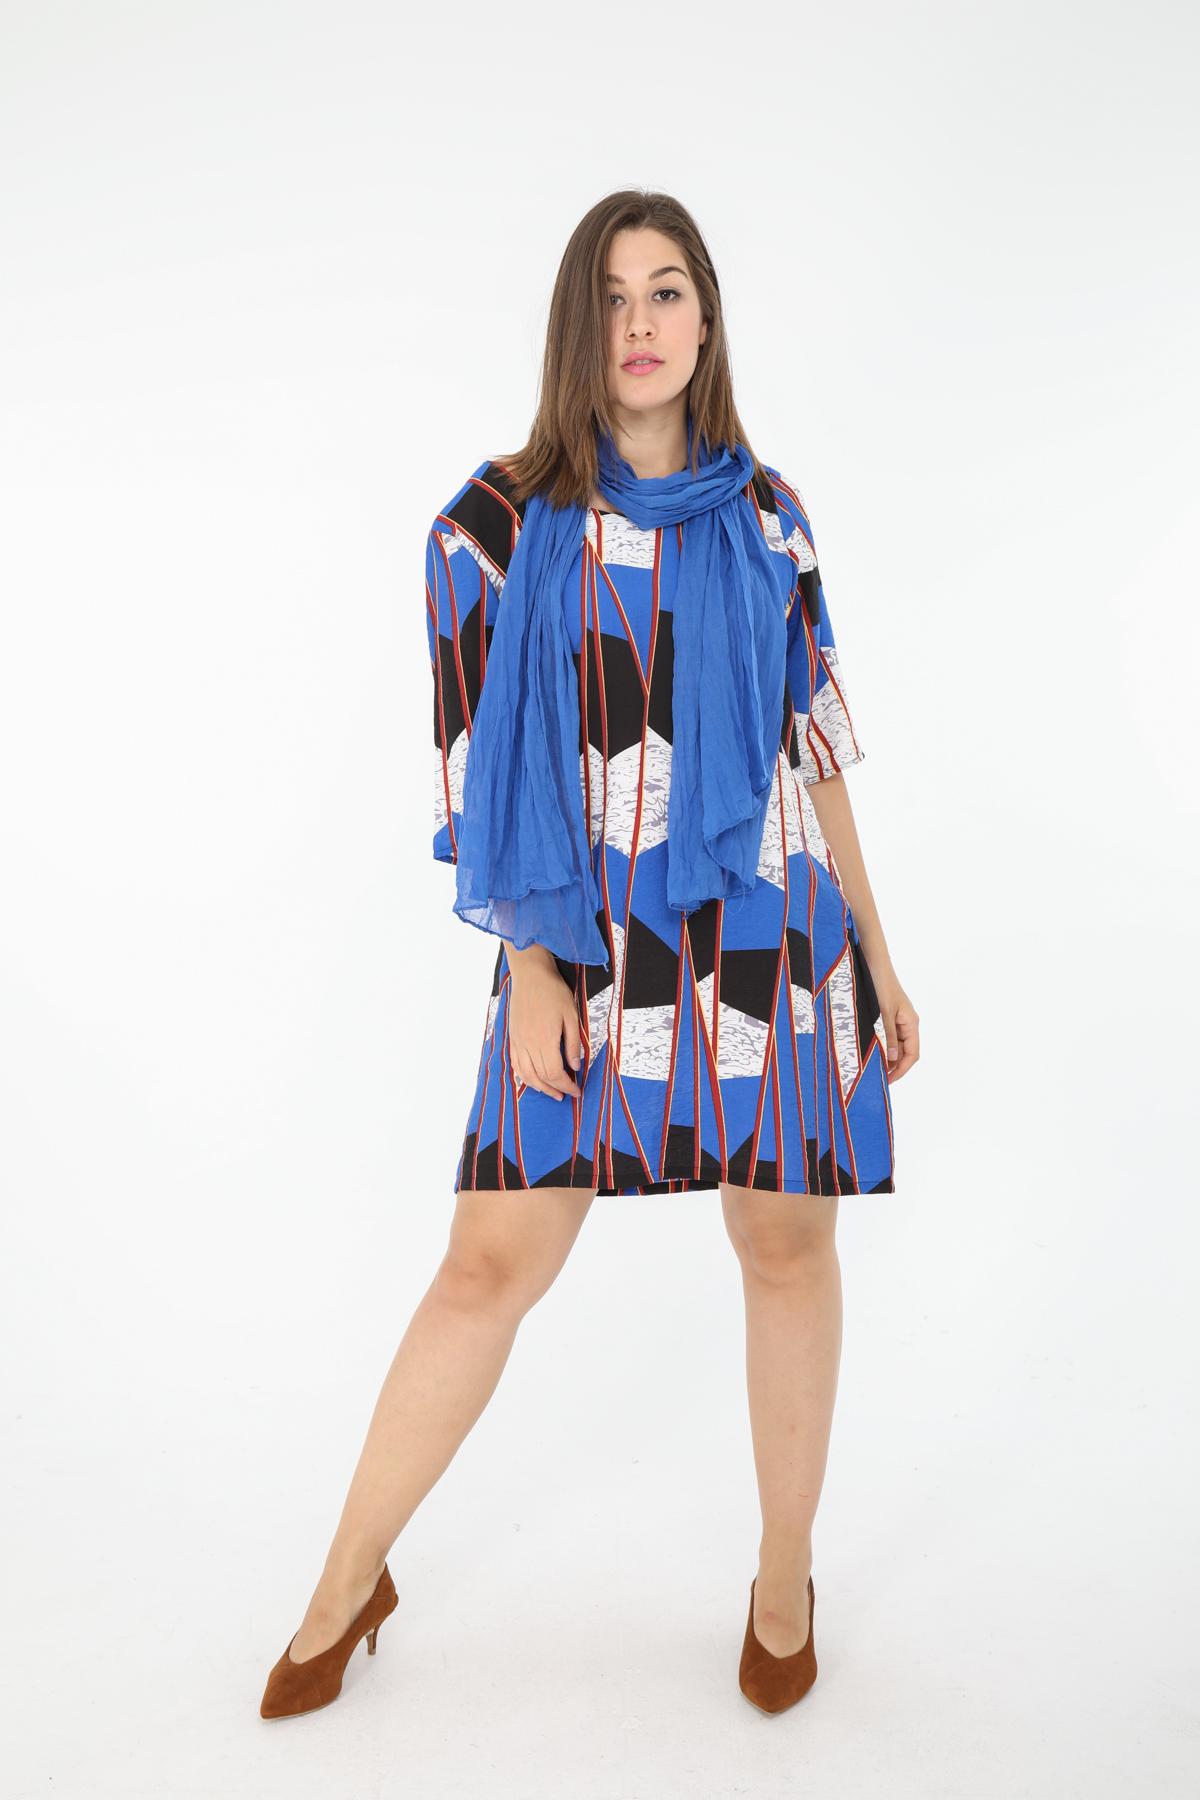 Robes & Combinaisons Femme Bleu For Her Paris (SHINIE) 2988GT #c Efashion Paris